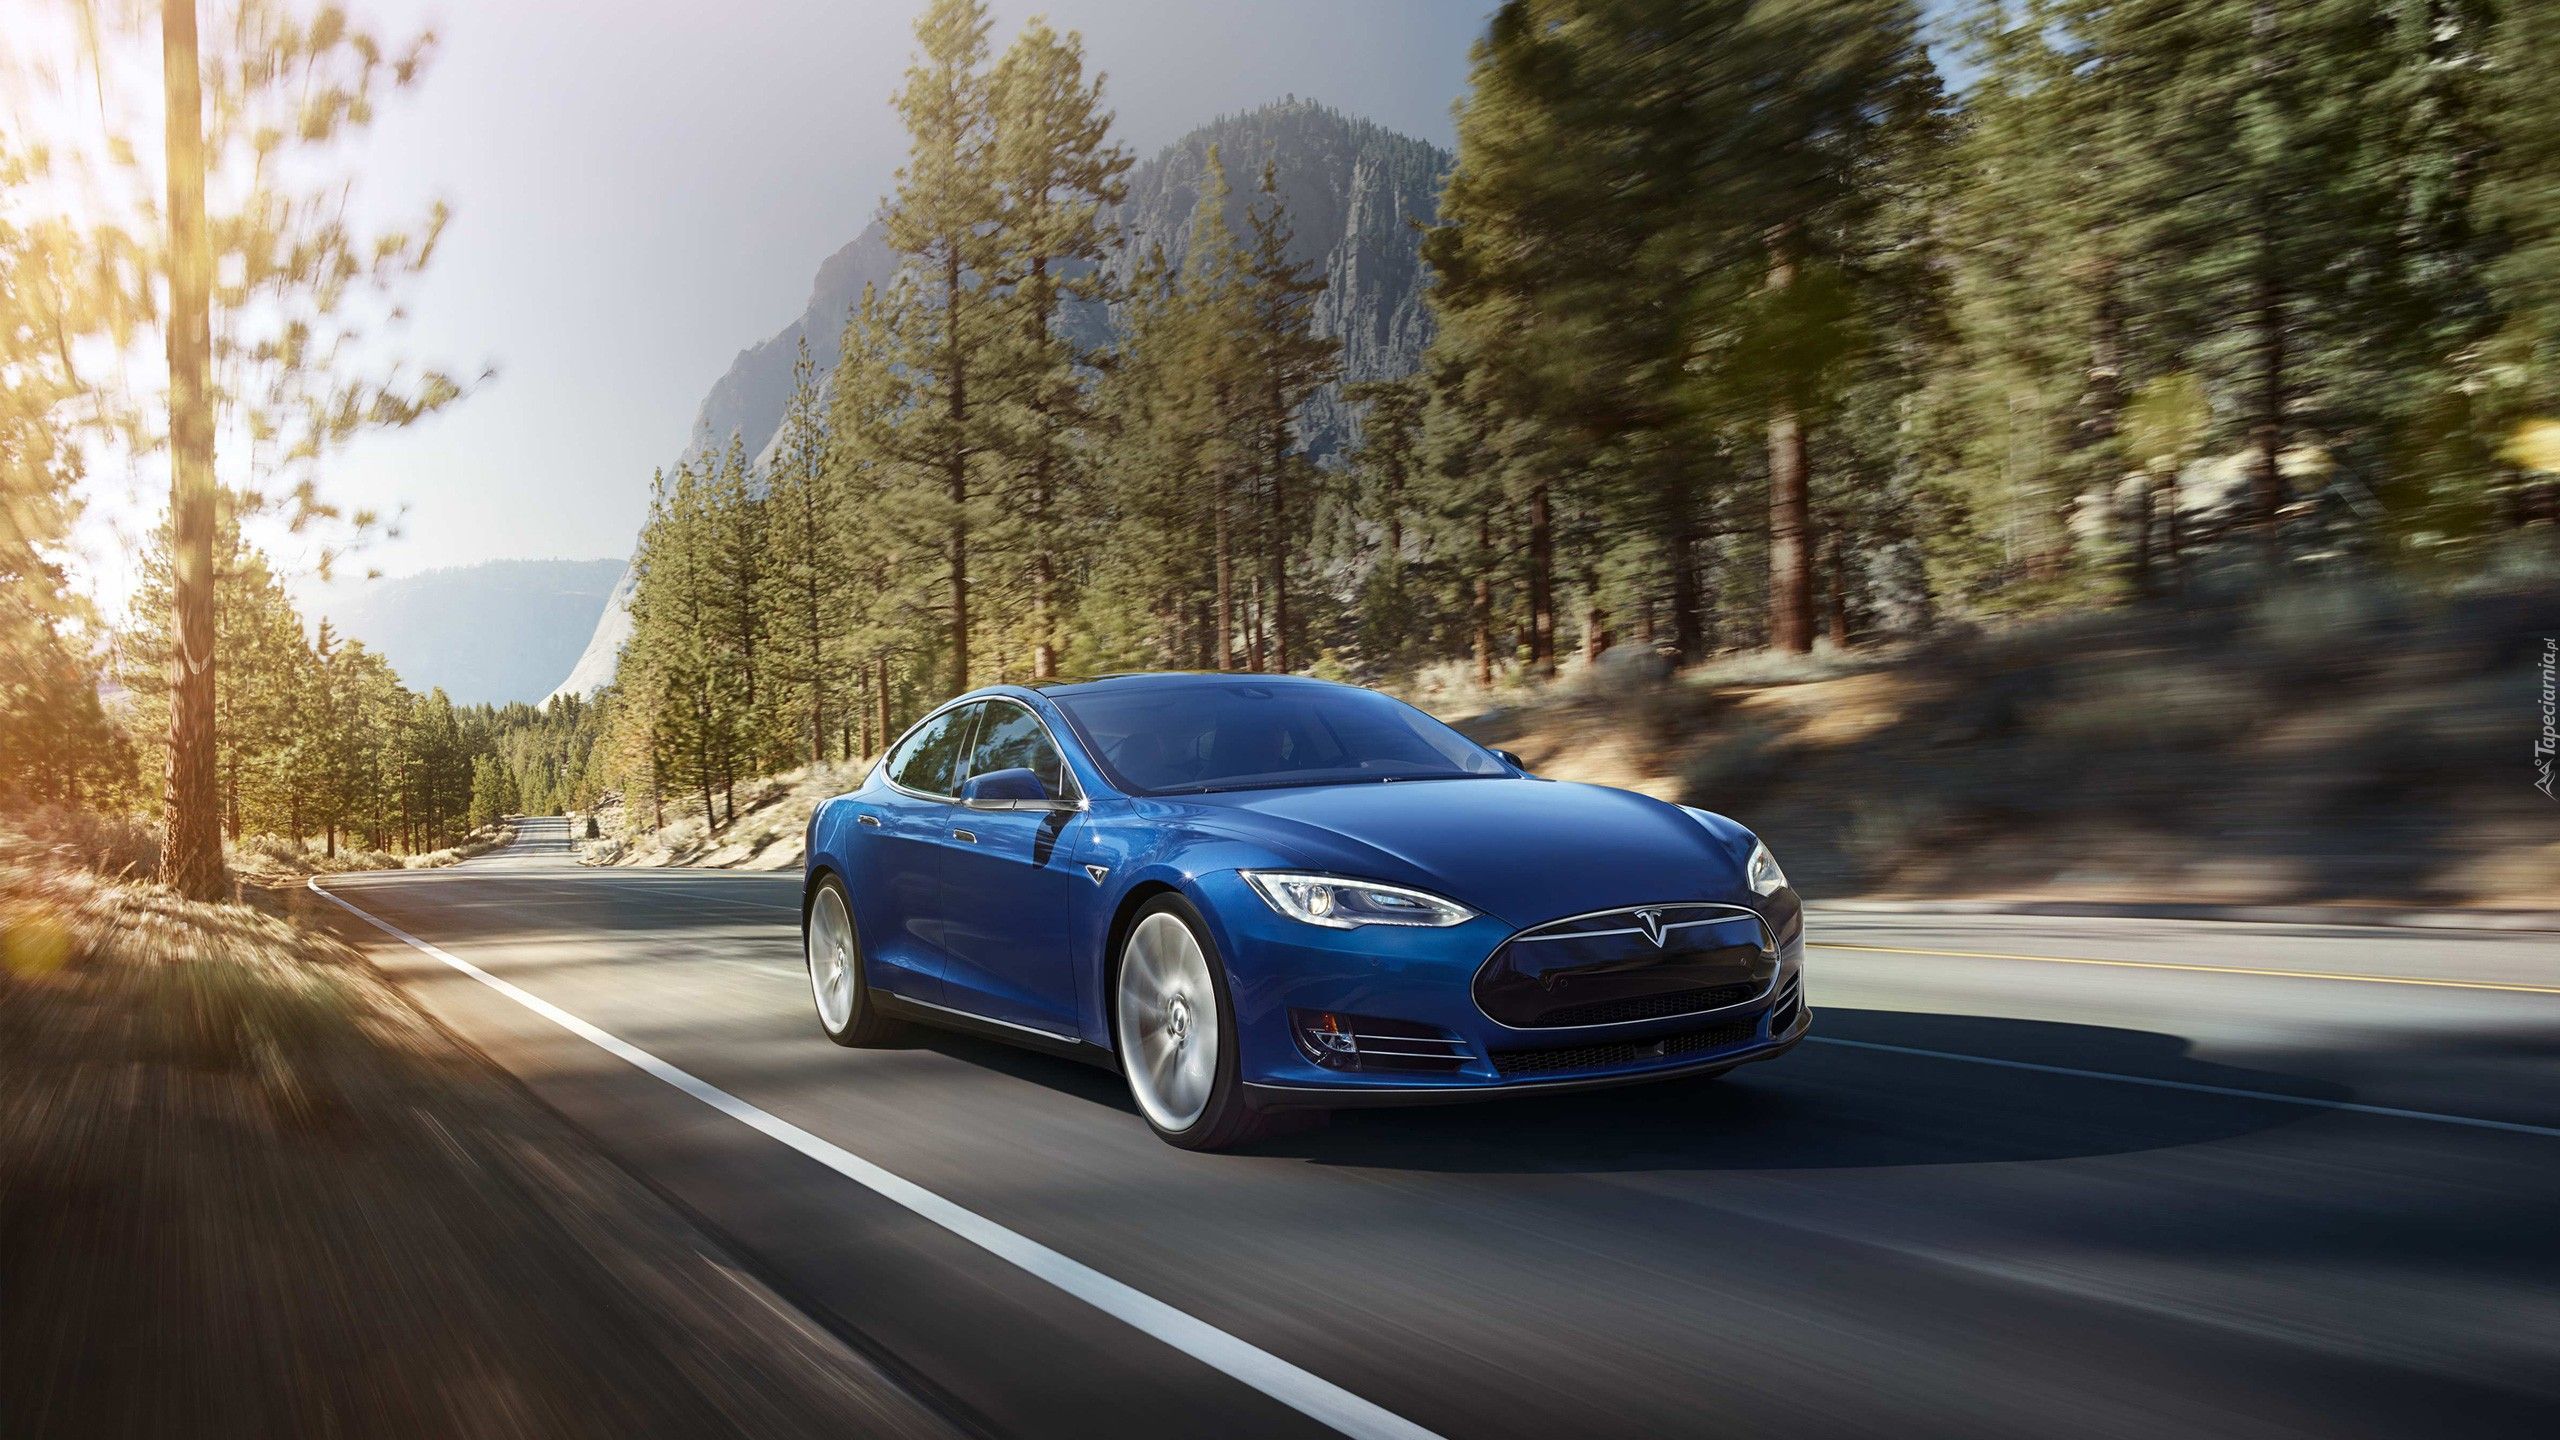 Samochód, Tesla, Model S